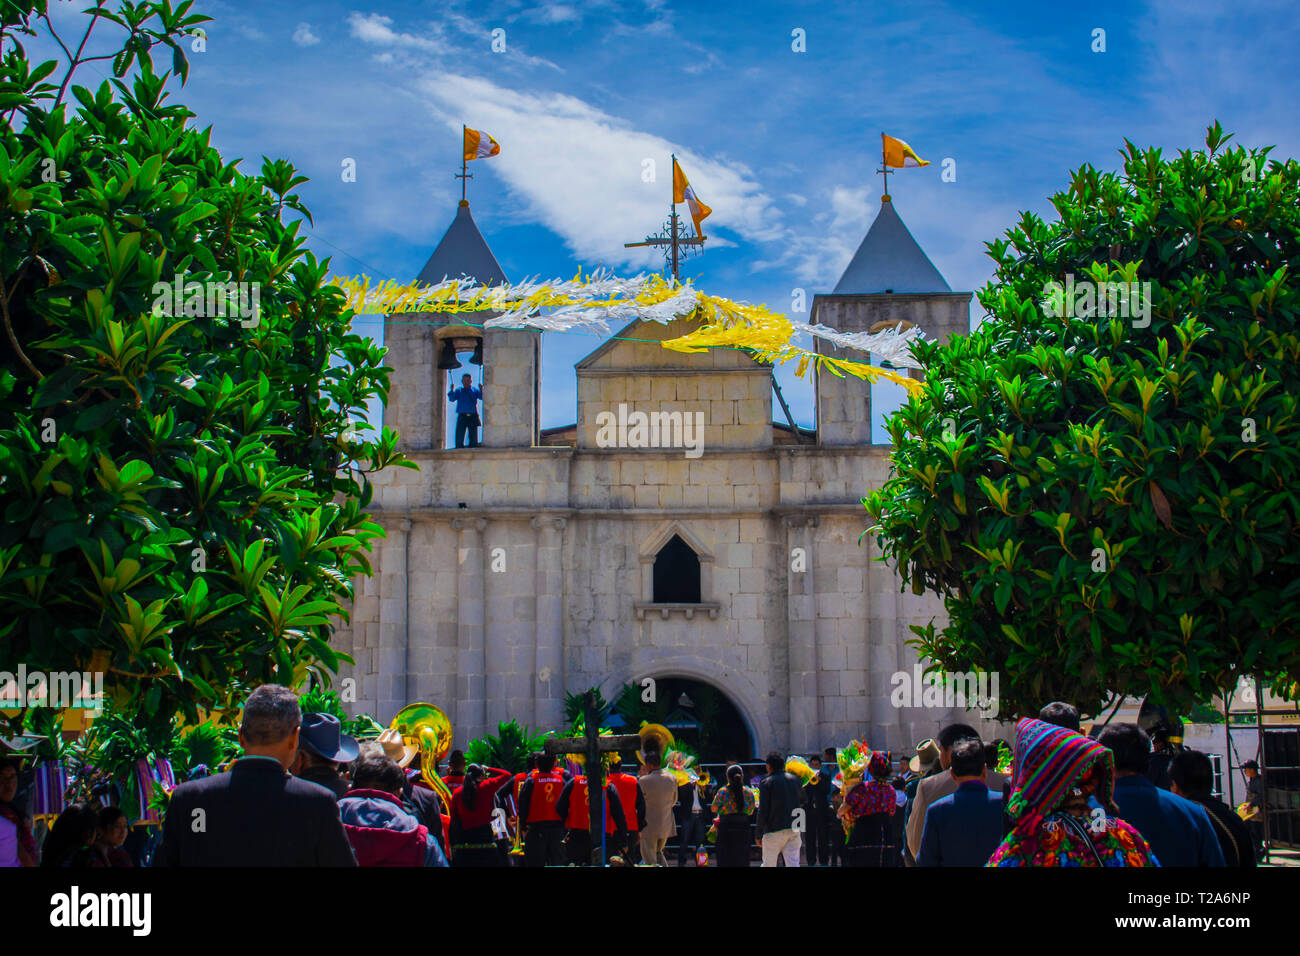 iglesia parroquial de santo niño de la cruz cajola  un dia de festividad, gran eclipse al sol 1 de mayo del 2018 gente libre y feliz tradicion cultua Stock Photo